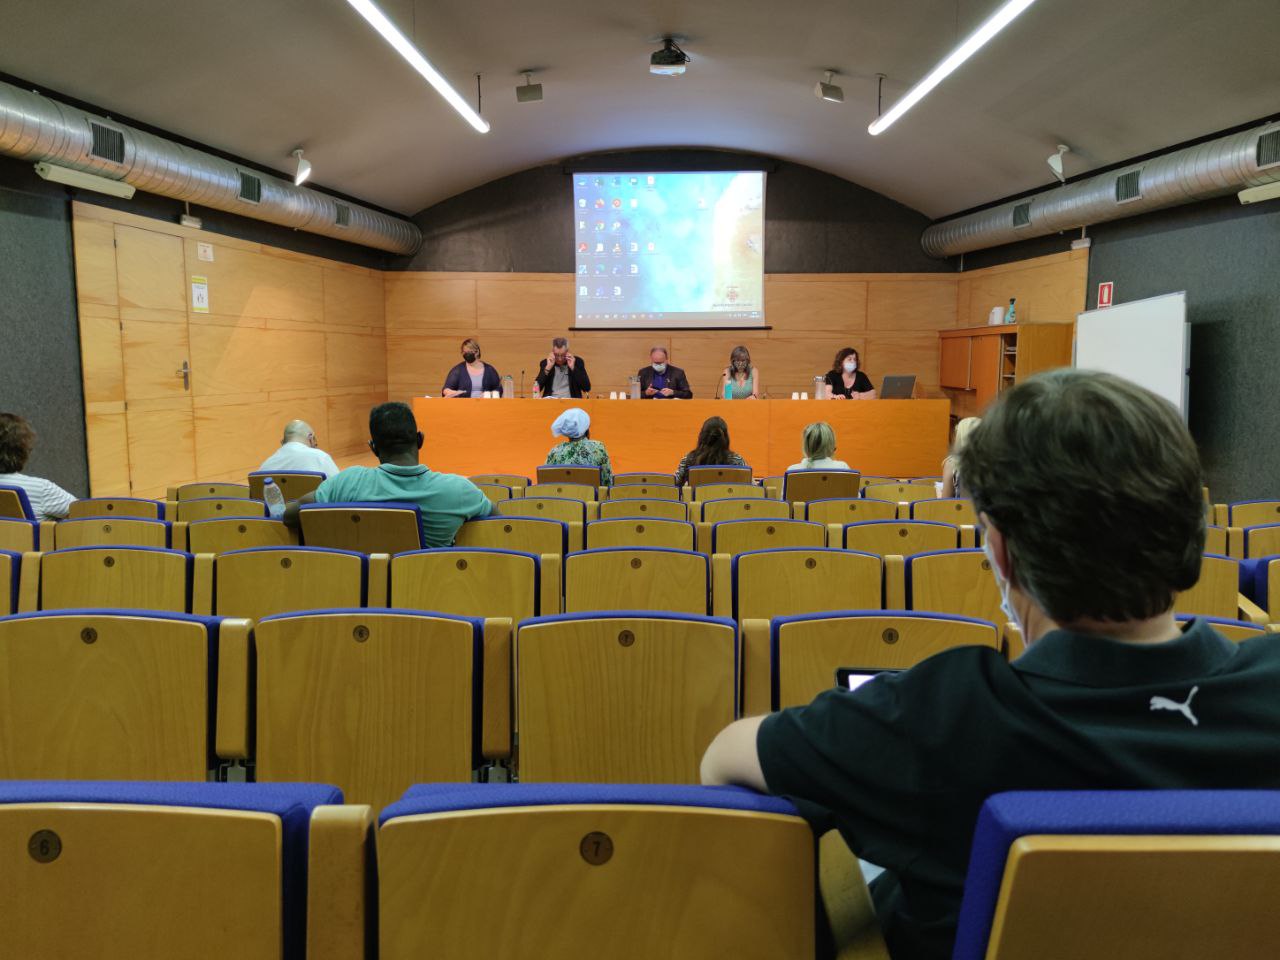 La Sala Jaume Magre va acollir ahir al vespre la reunió del Consell Escolar Municipal